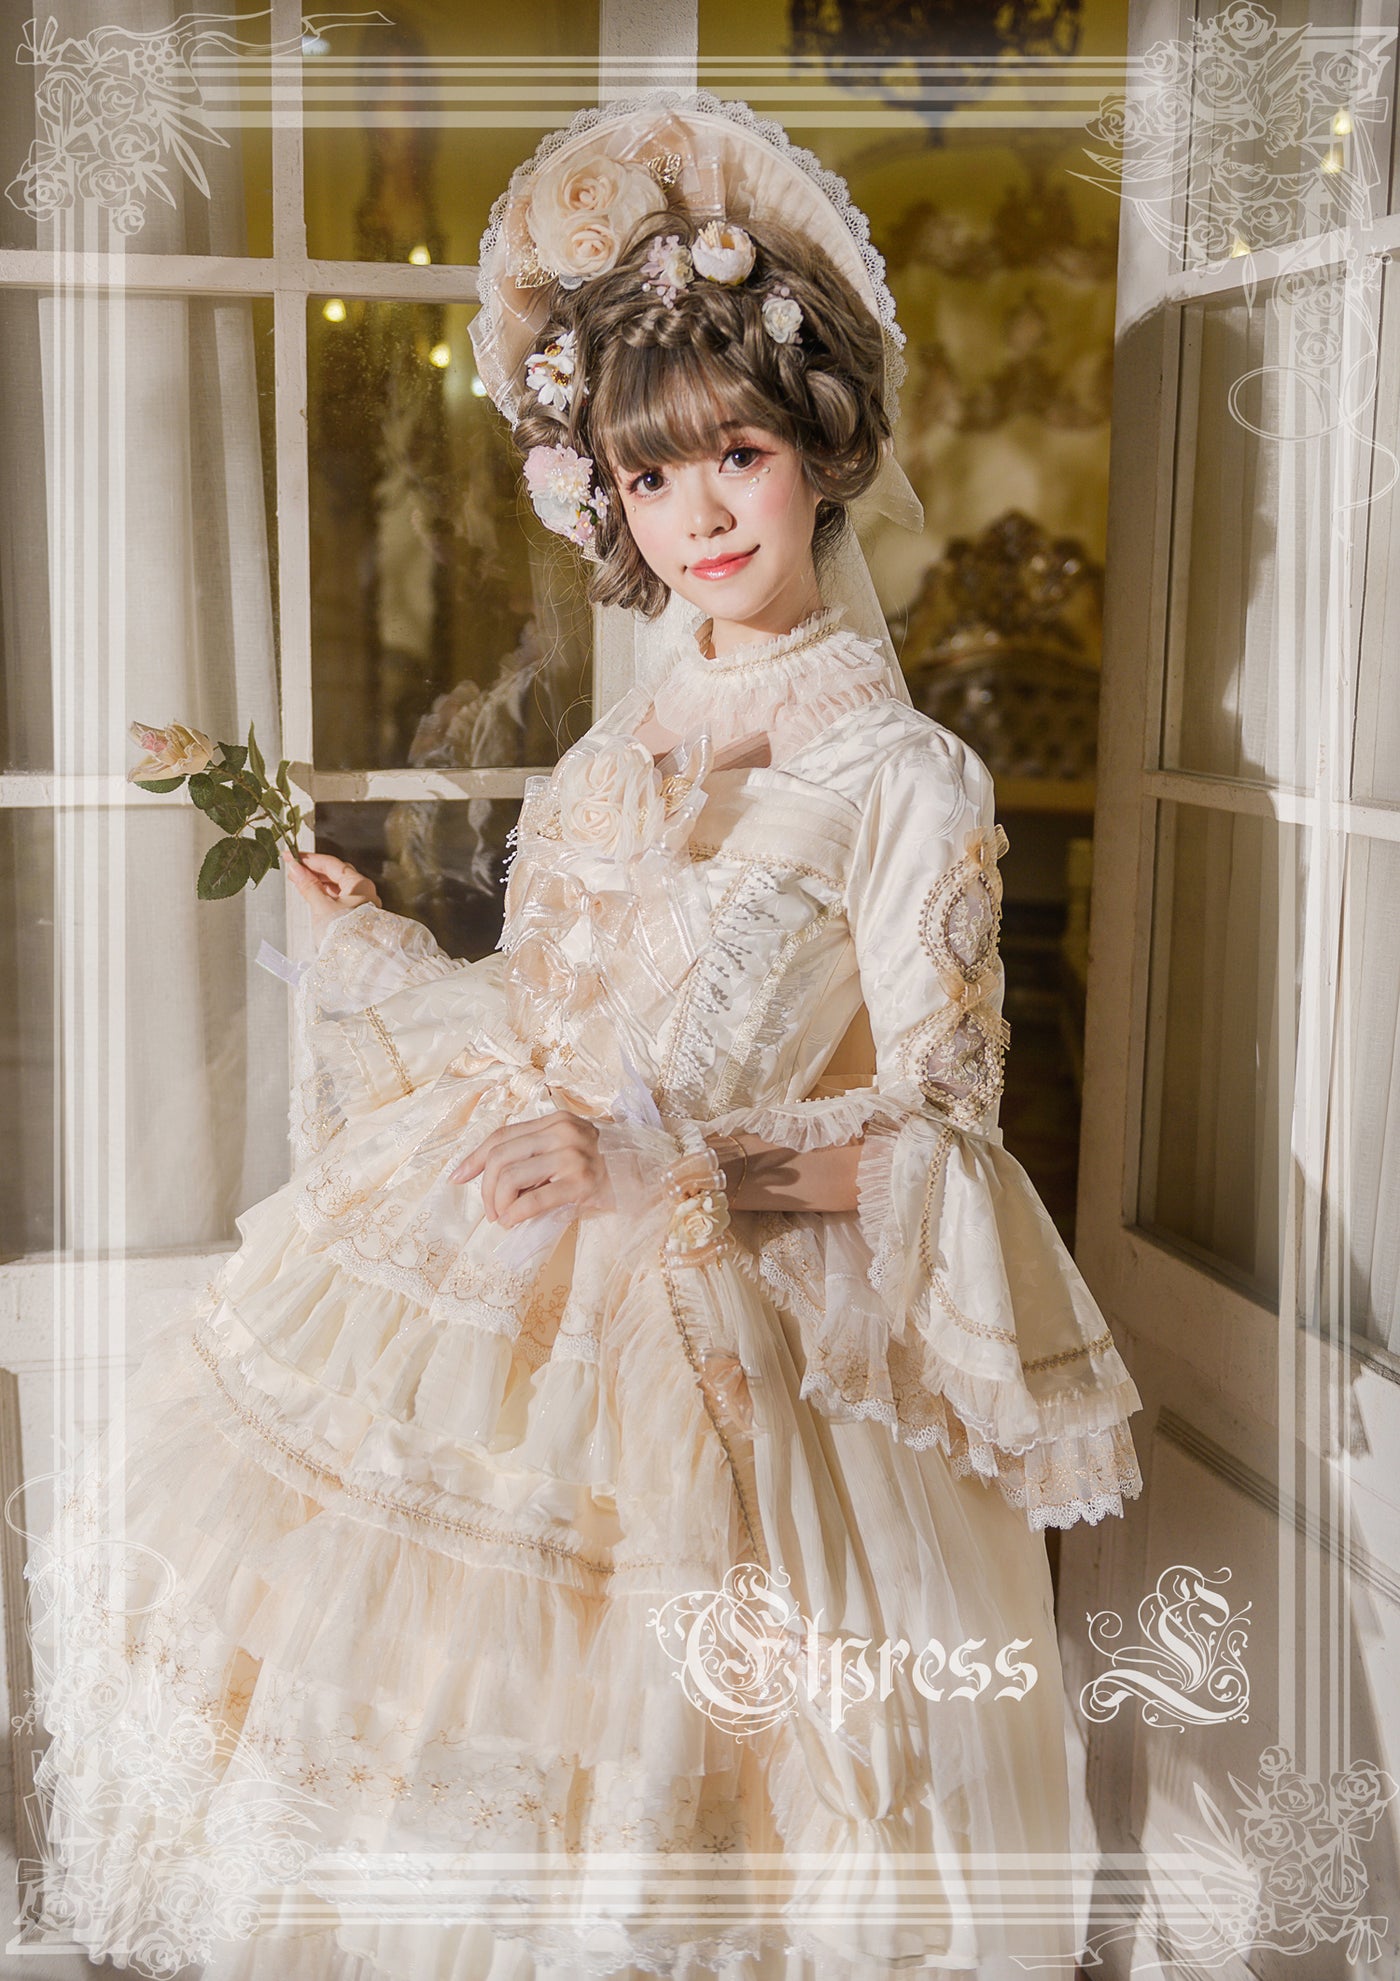 Elpress L~Fairies Island~Lolita wedding Dress OP Dress   